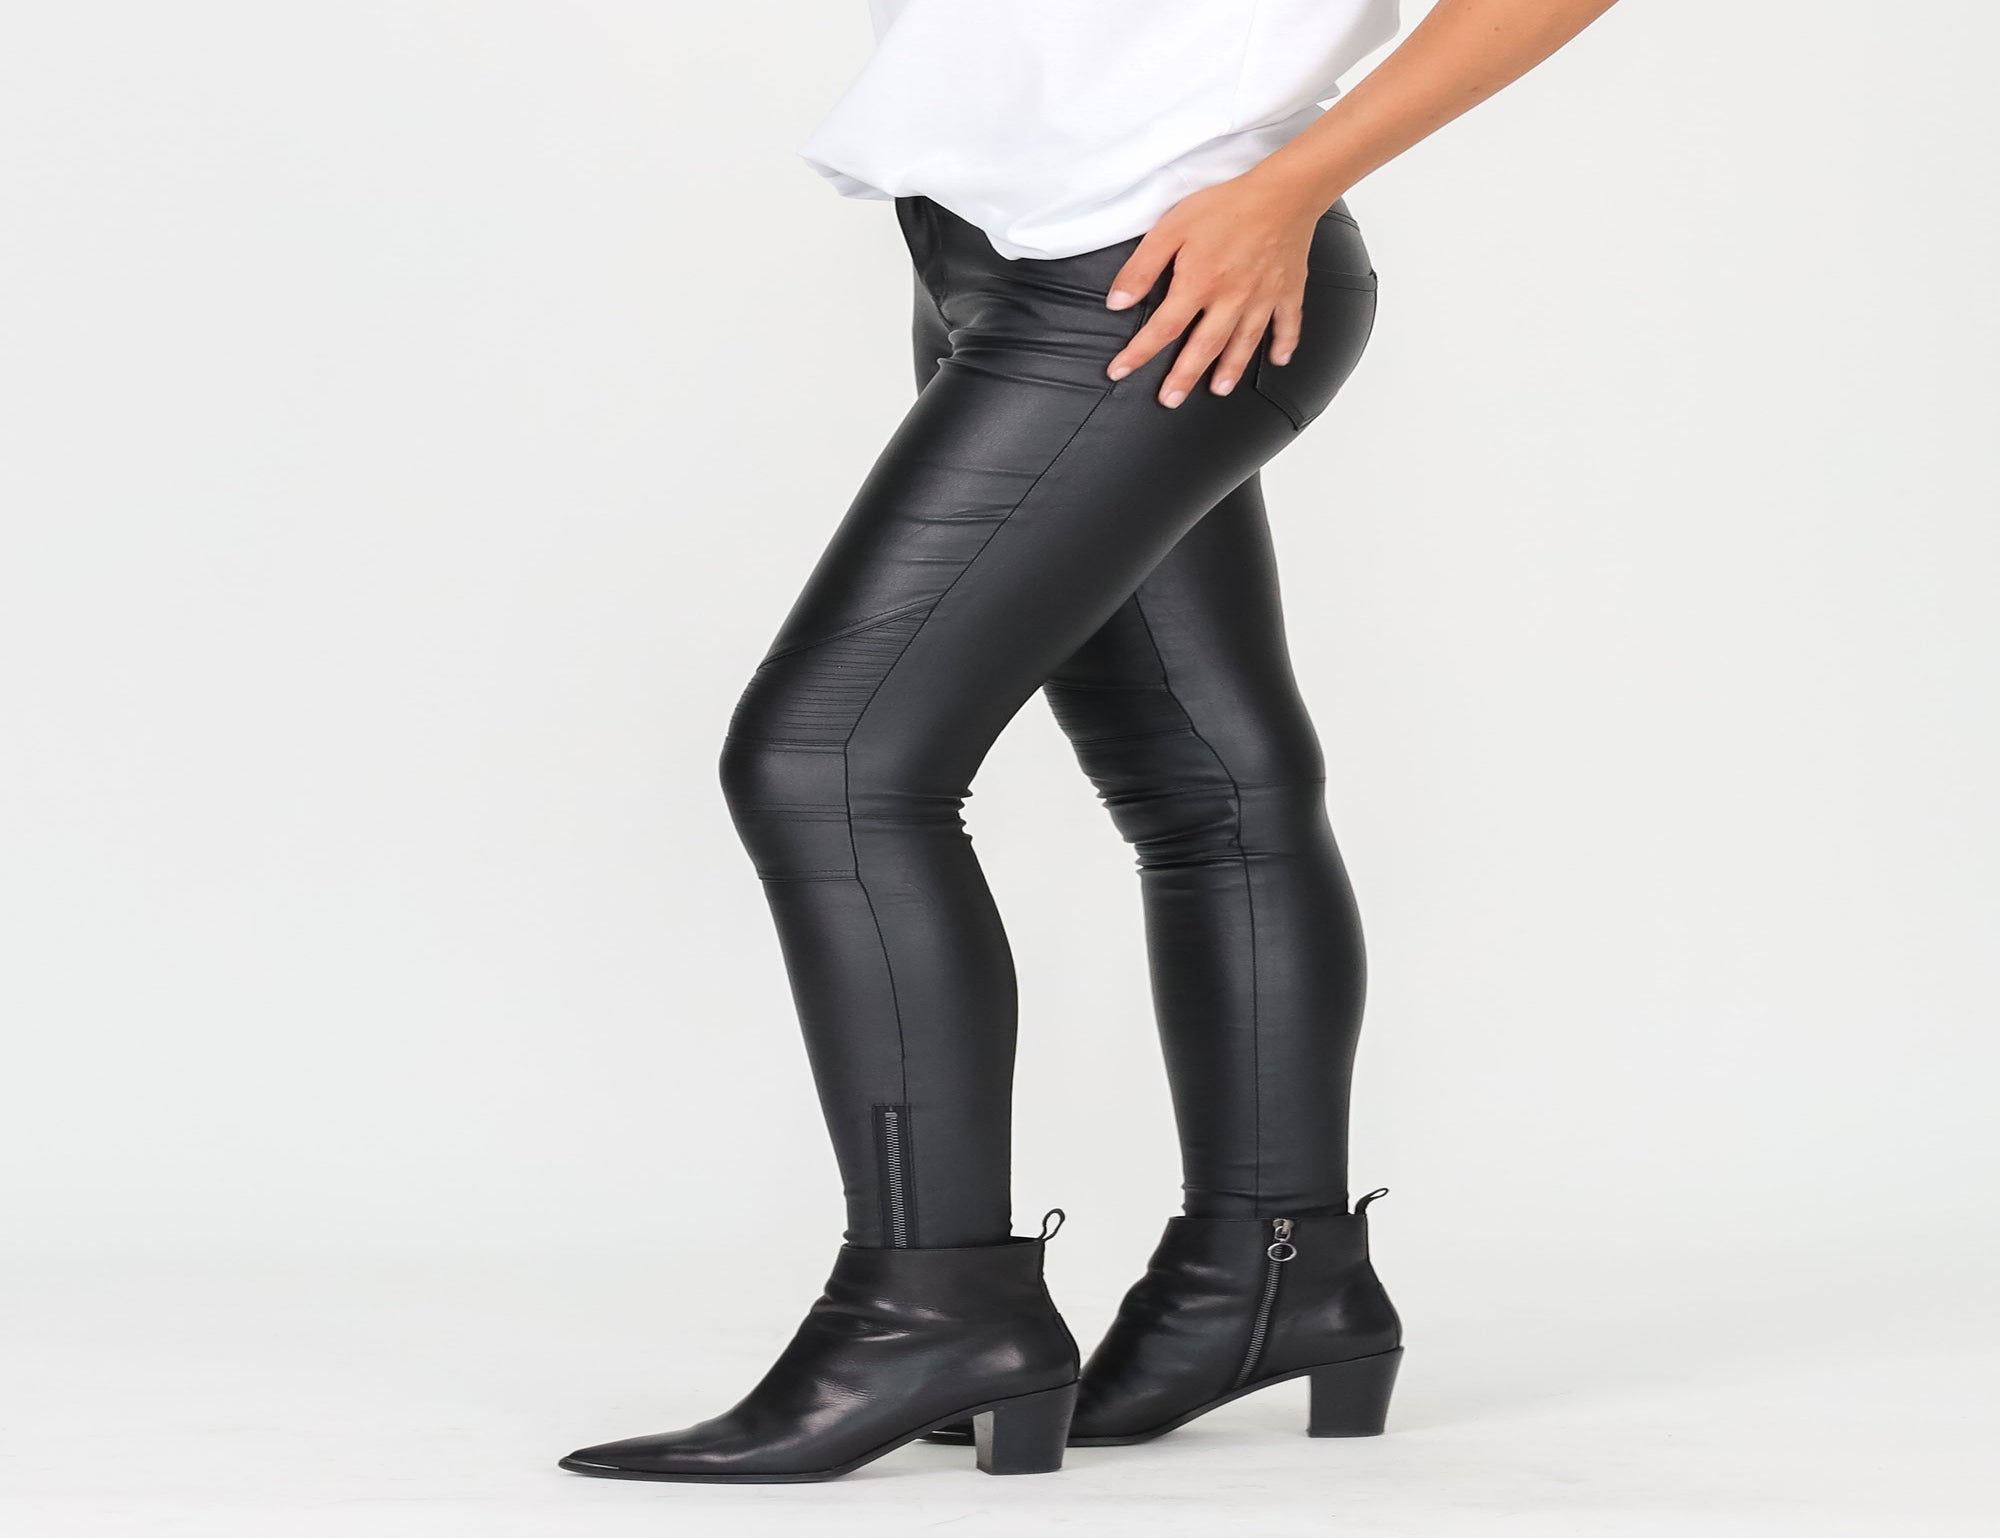 Nøjagtighed efterligne styrte Zip Leg Leather Look Jean - Black - Pants - Full Length - Women's Clothing  - Storm